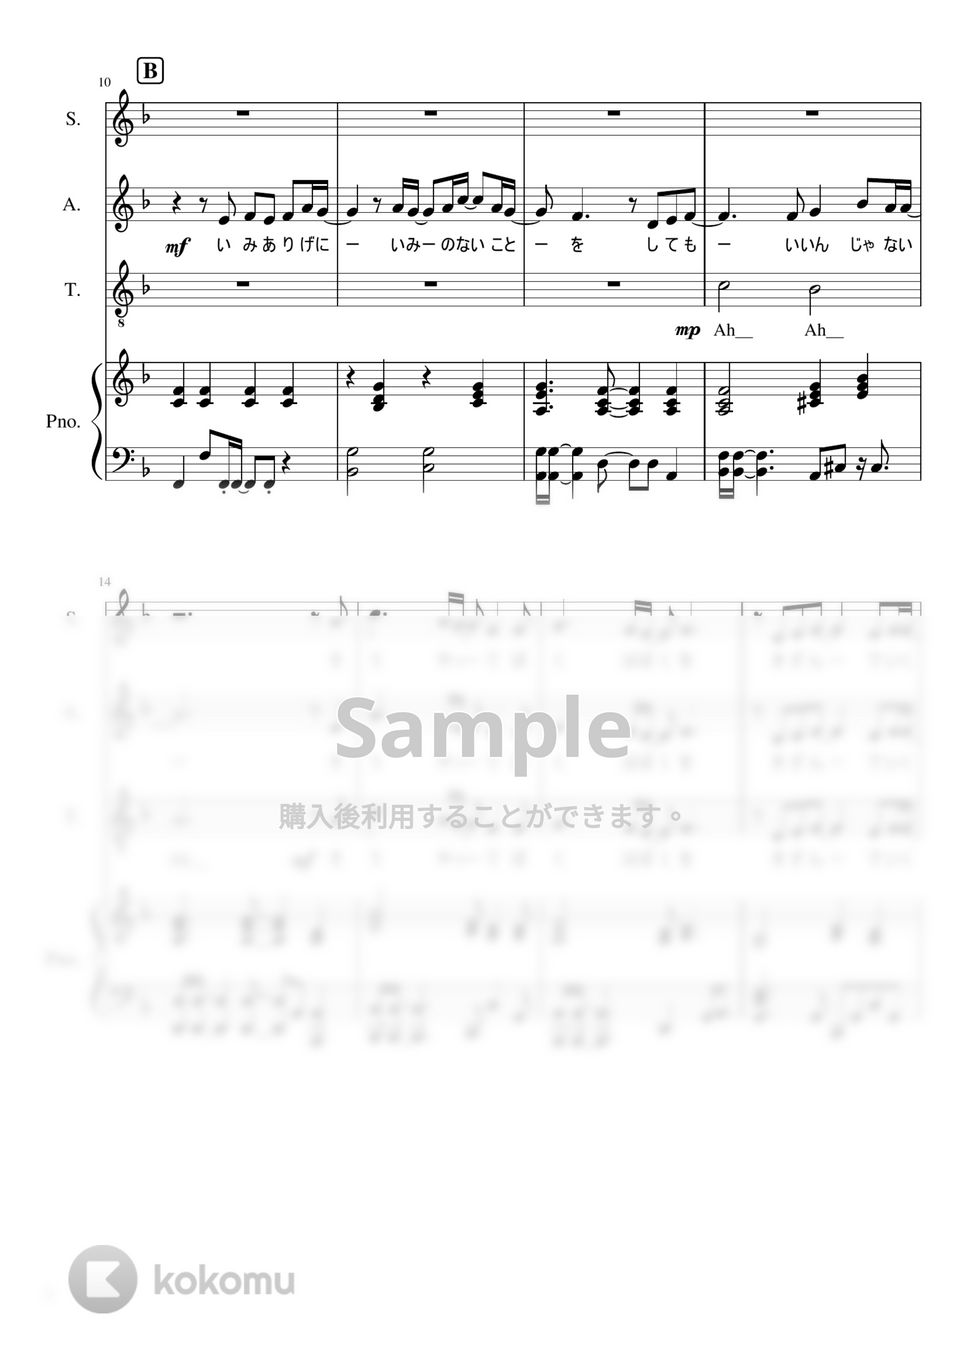 なにわ男子 - 夜這星 (1stアルバム「1st Love」収録曲。) by ピアノぷりん